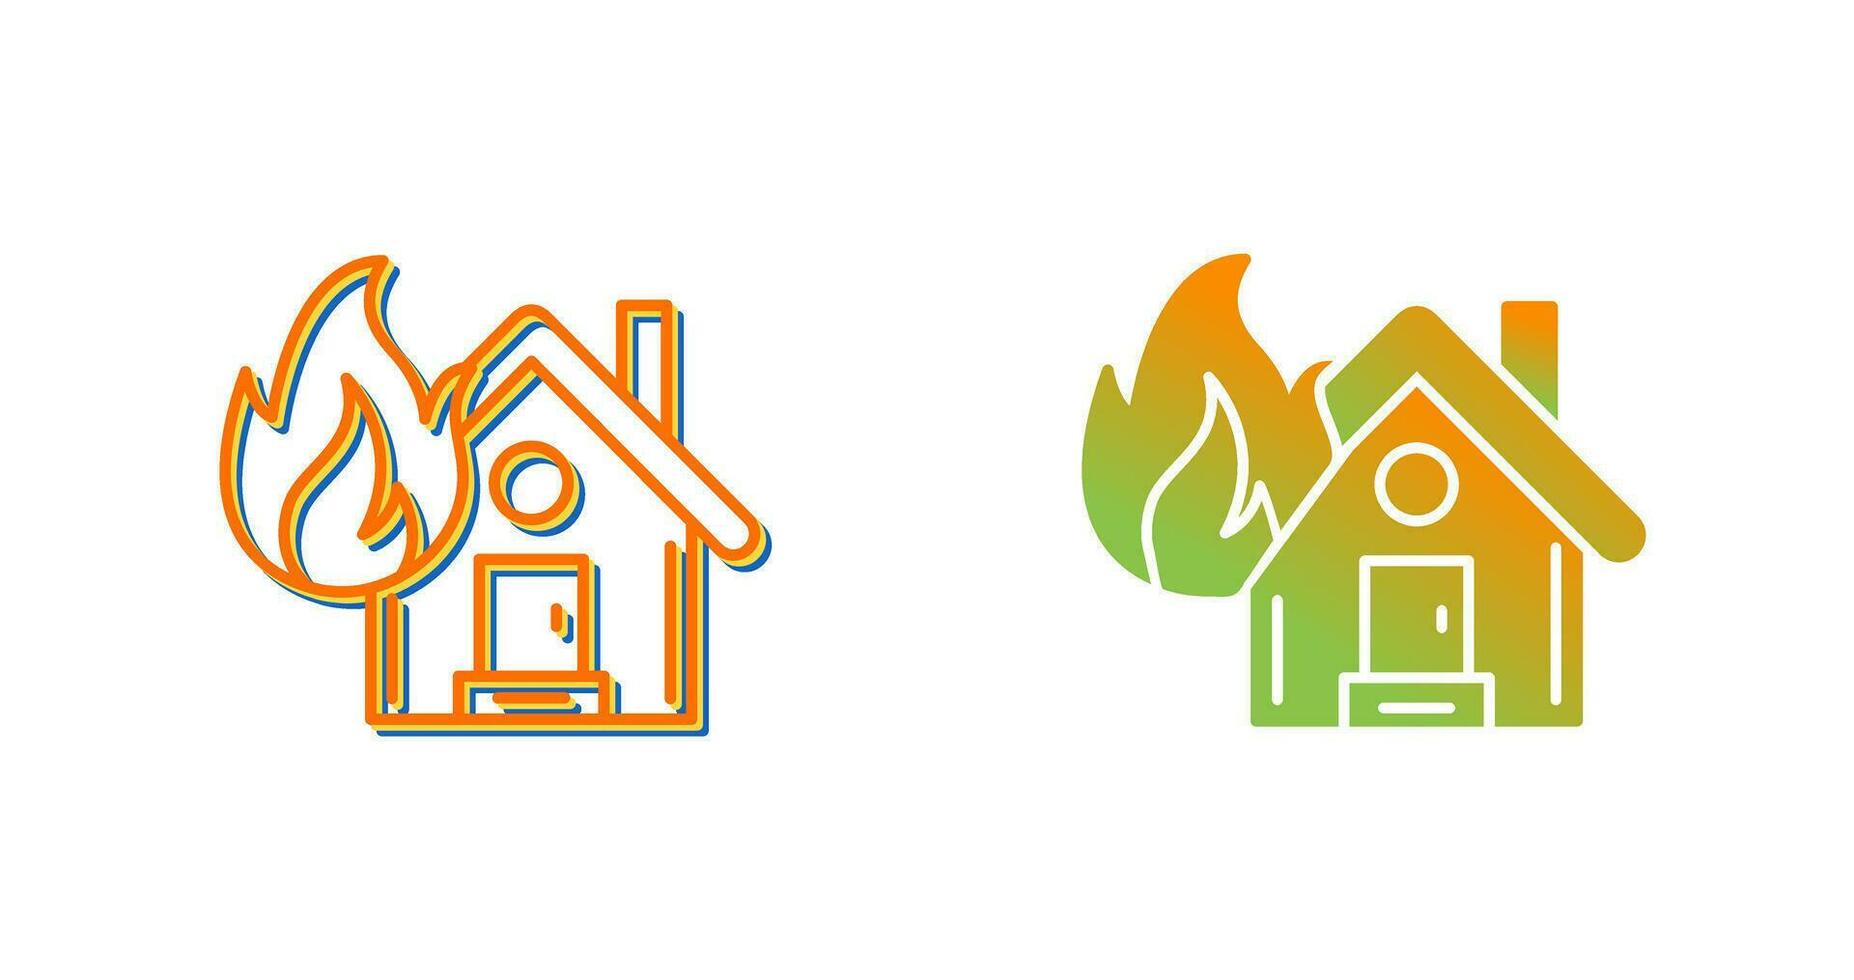 hus på brand vektor ikon